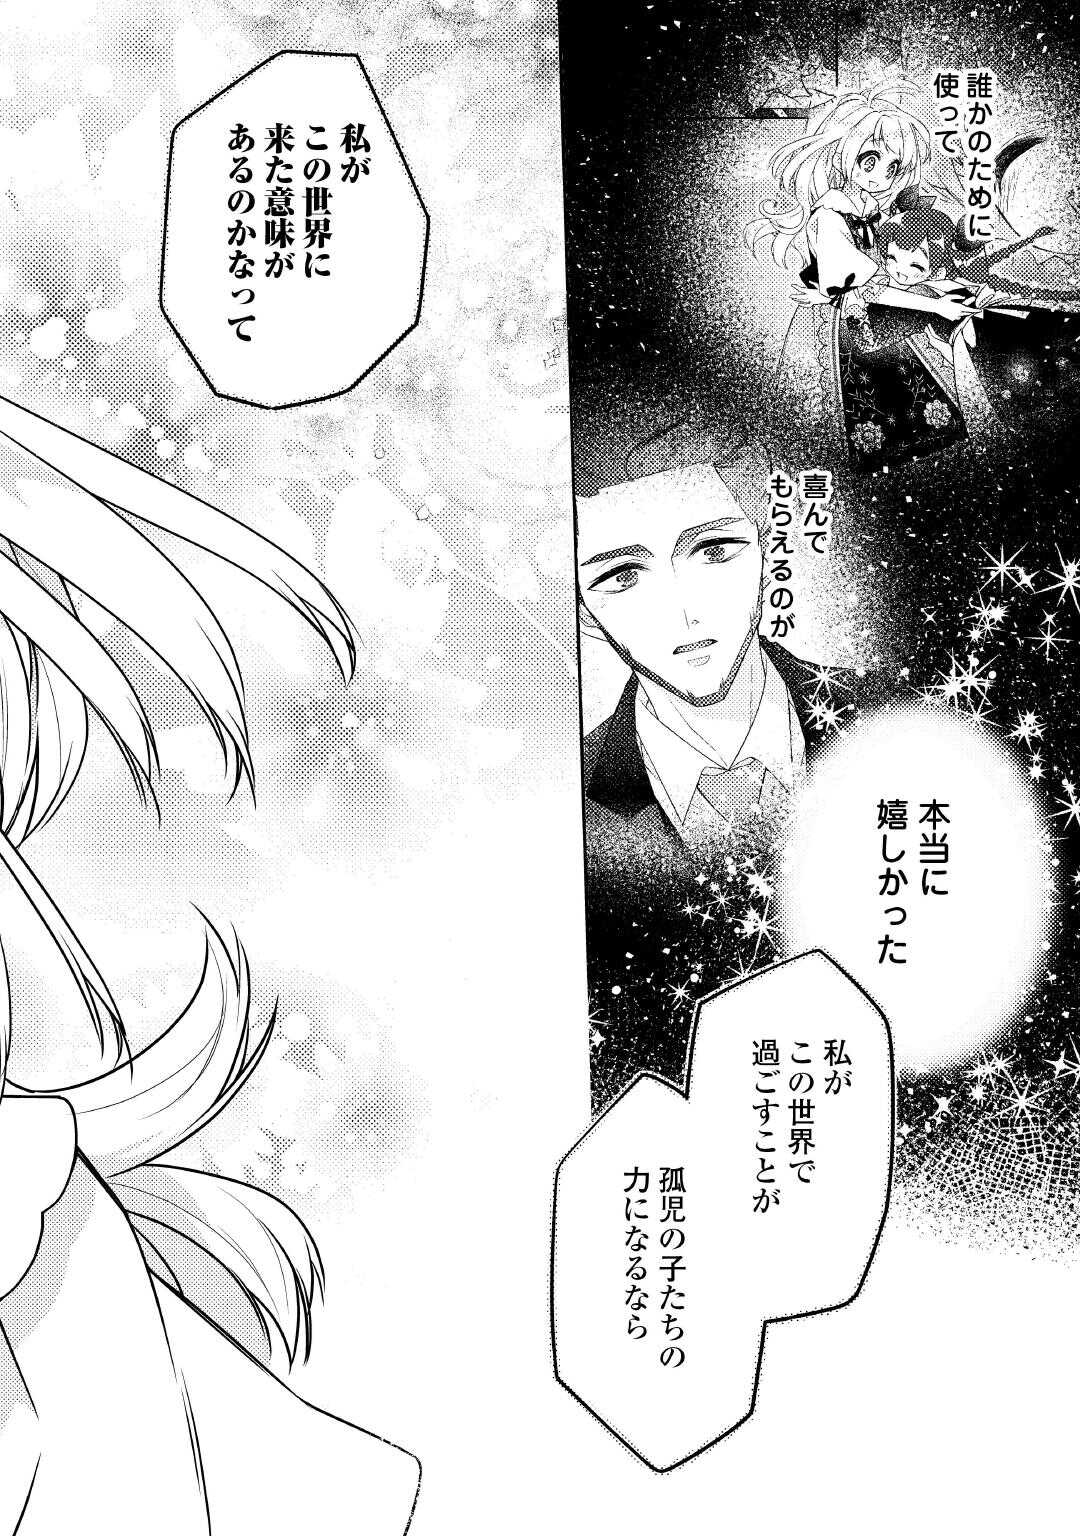 Toaru Chisana Mura No Chi Tona Tanya Ya San - Chapter 20 - Page 10